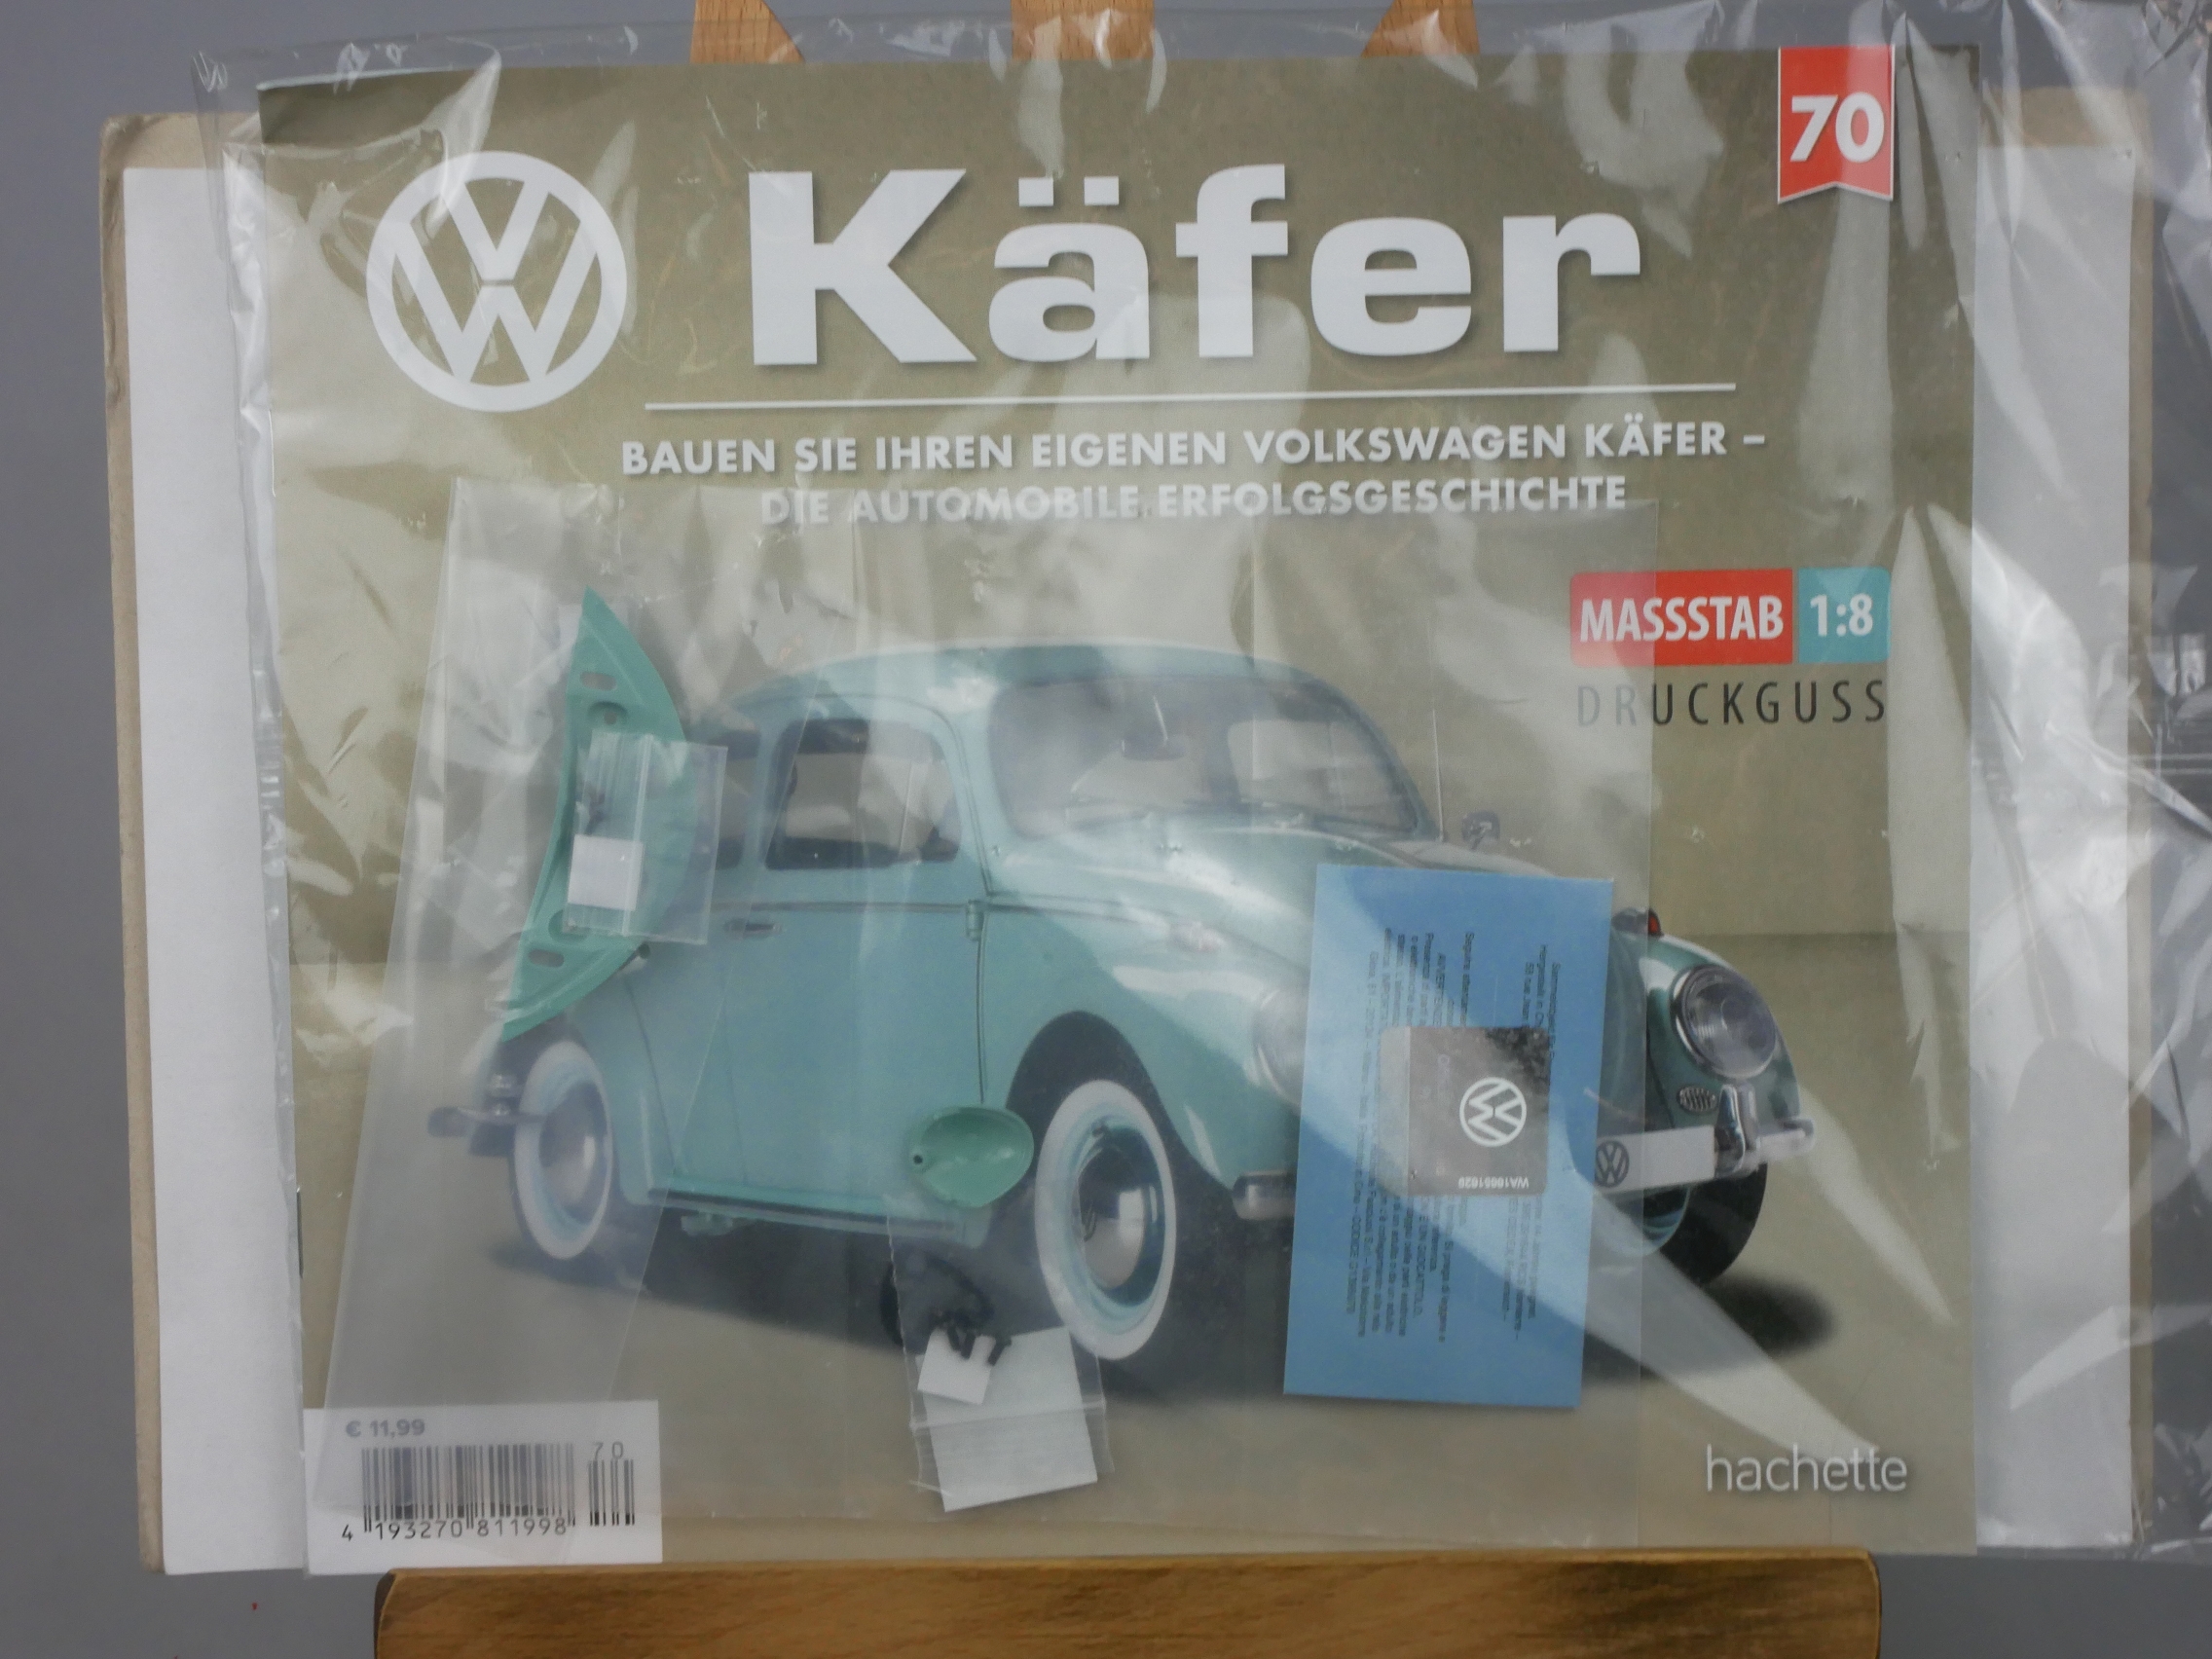  Ausgabe 70 Volkswagen VW Käfer 1/8 Hachette - 126437